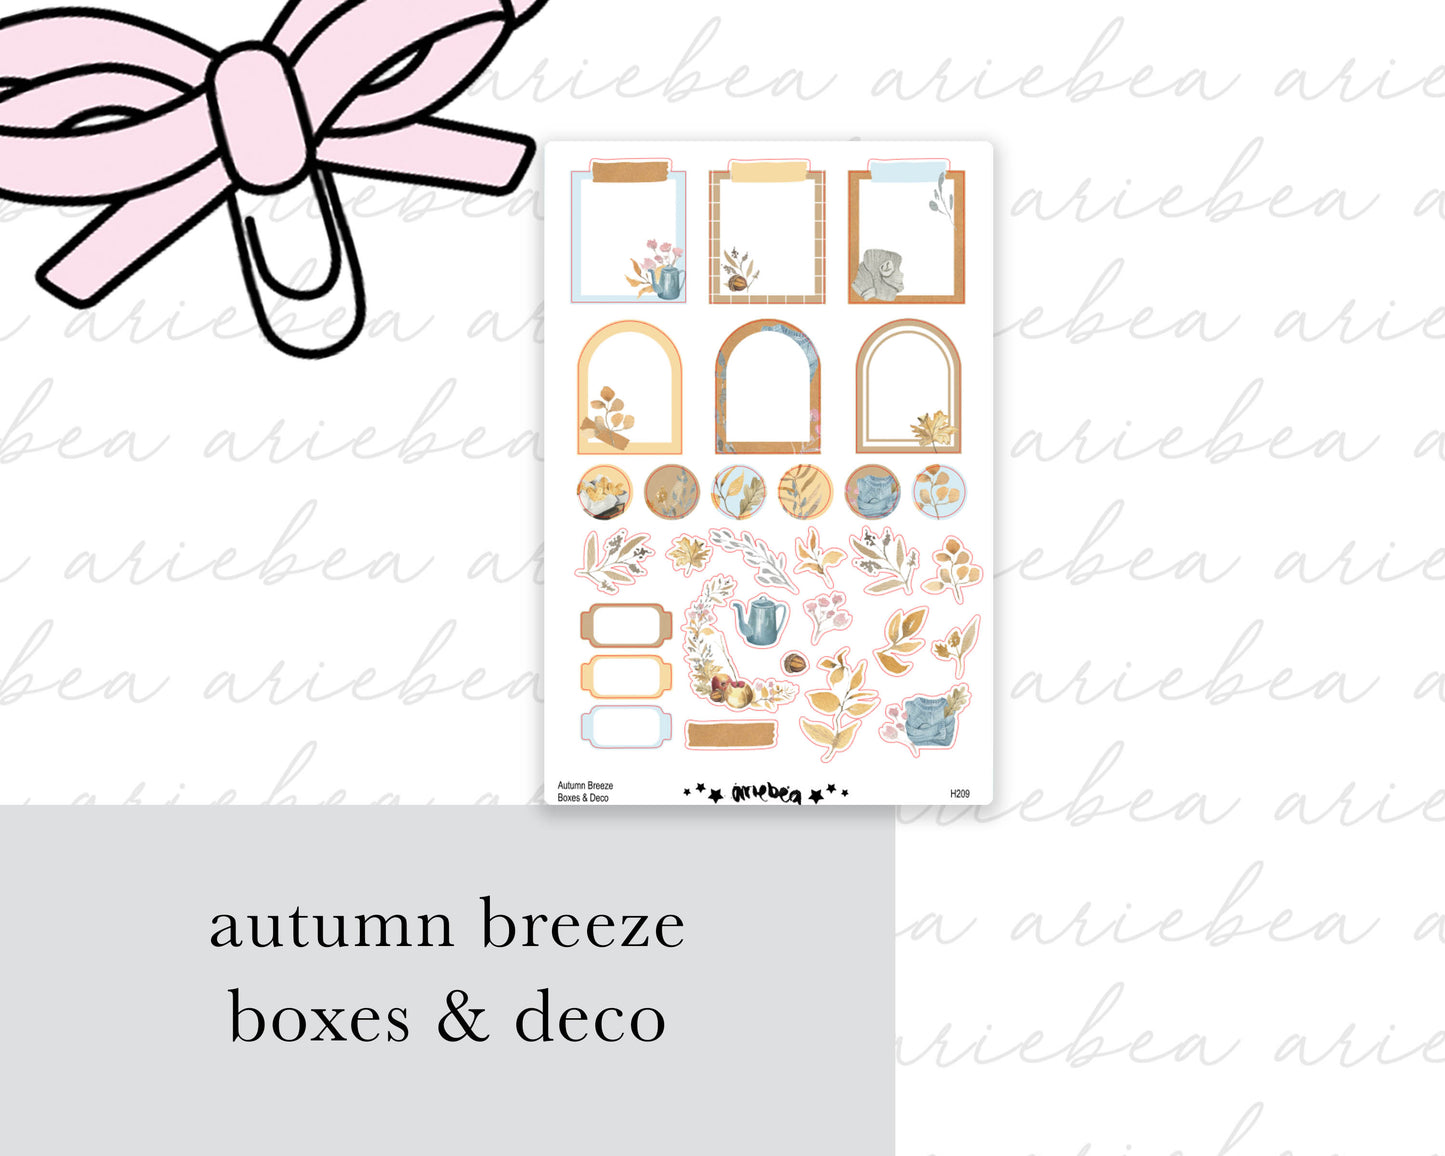 Autumn Breeze Boxes & Deco